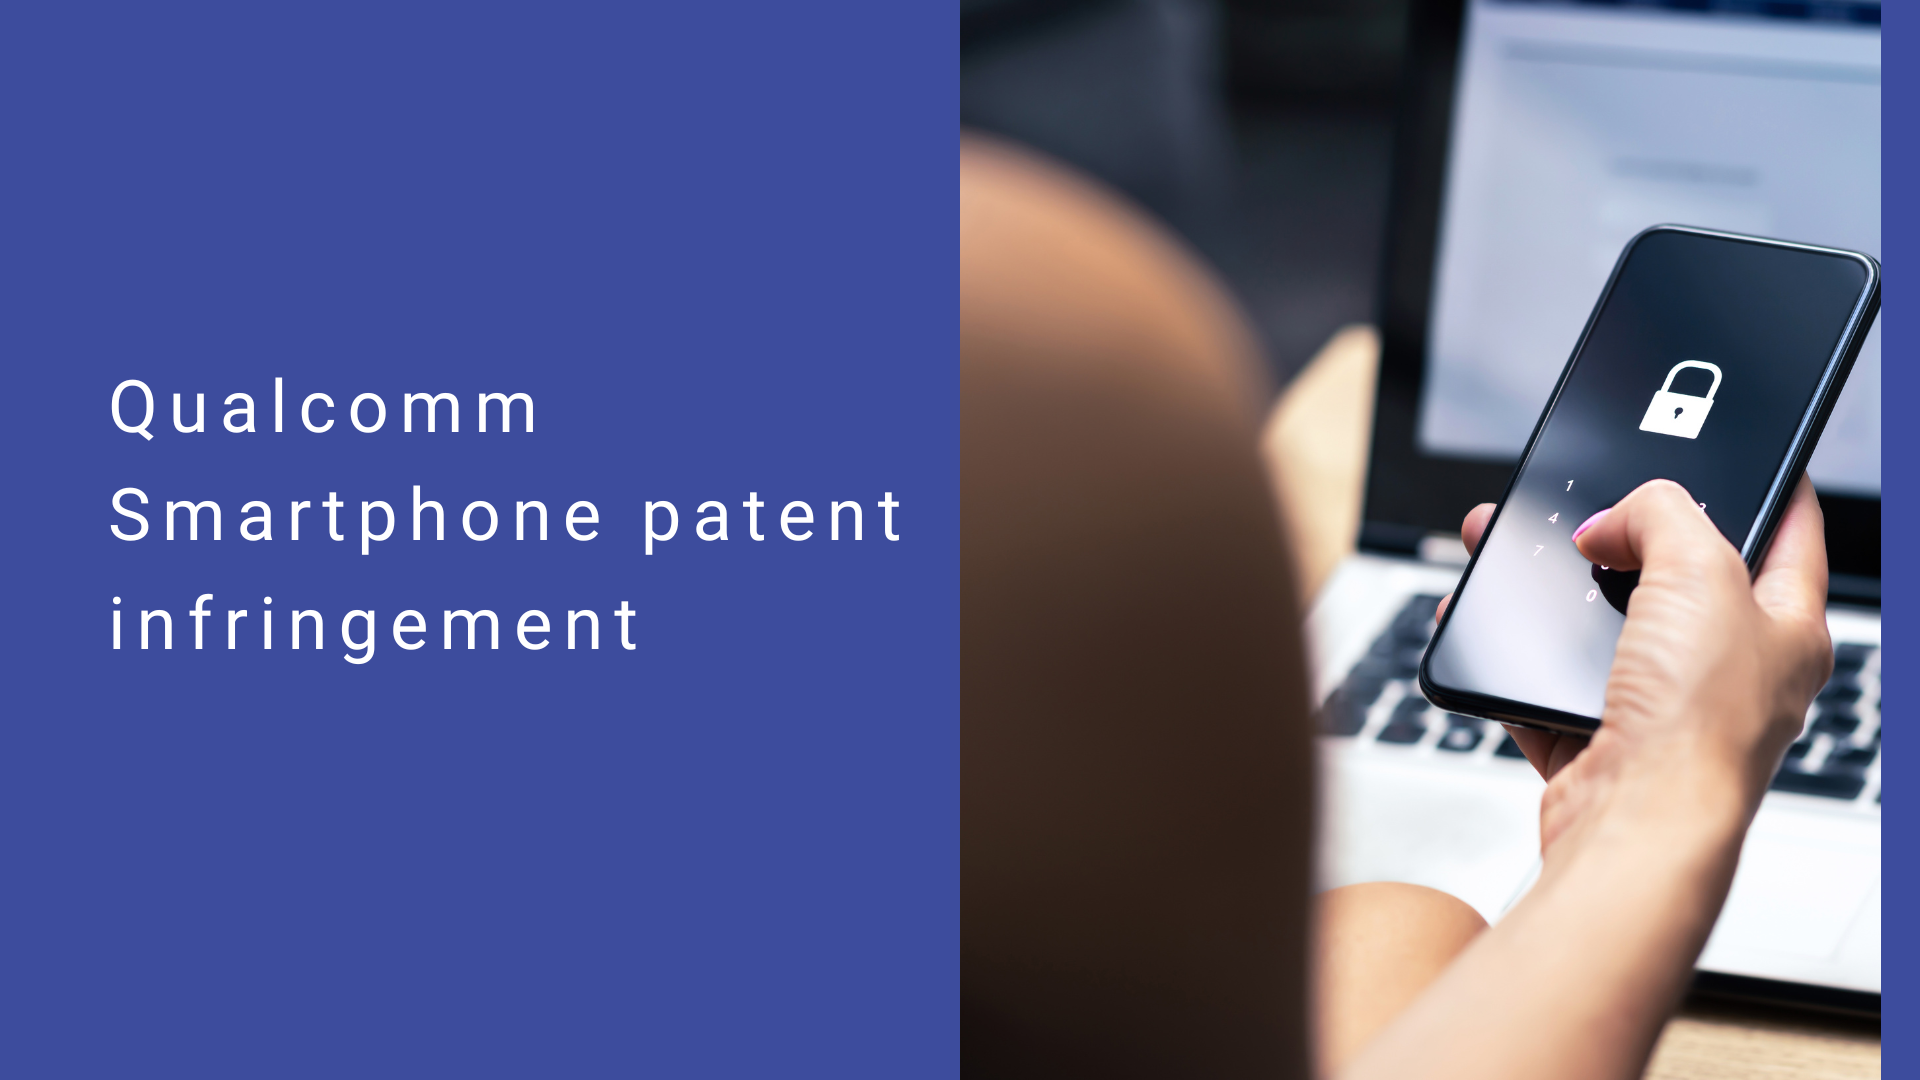 Qualcomm Smartphone patent infringement